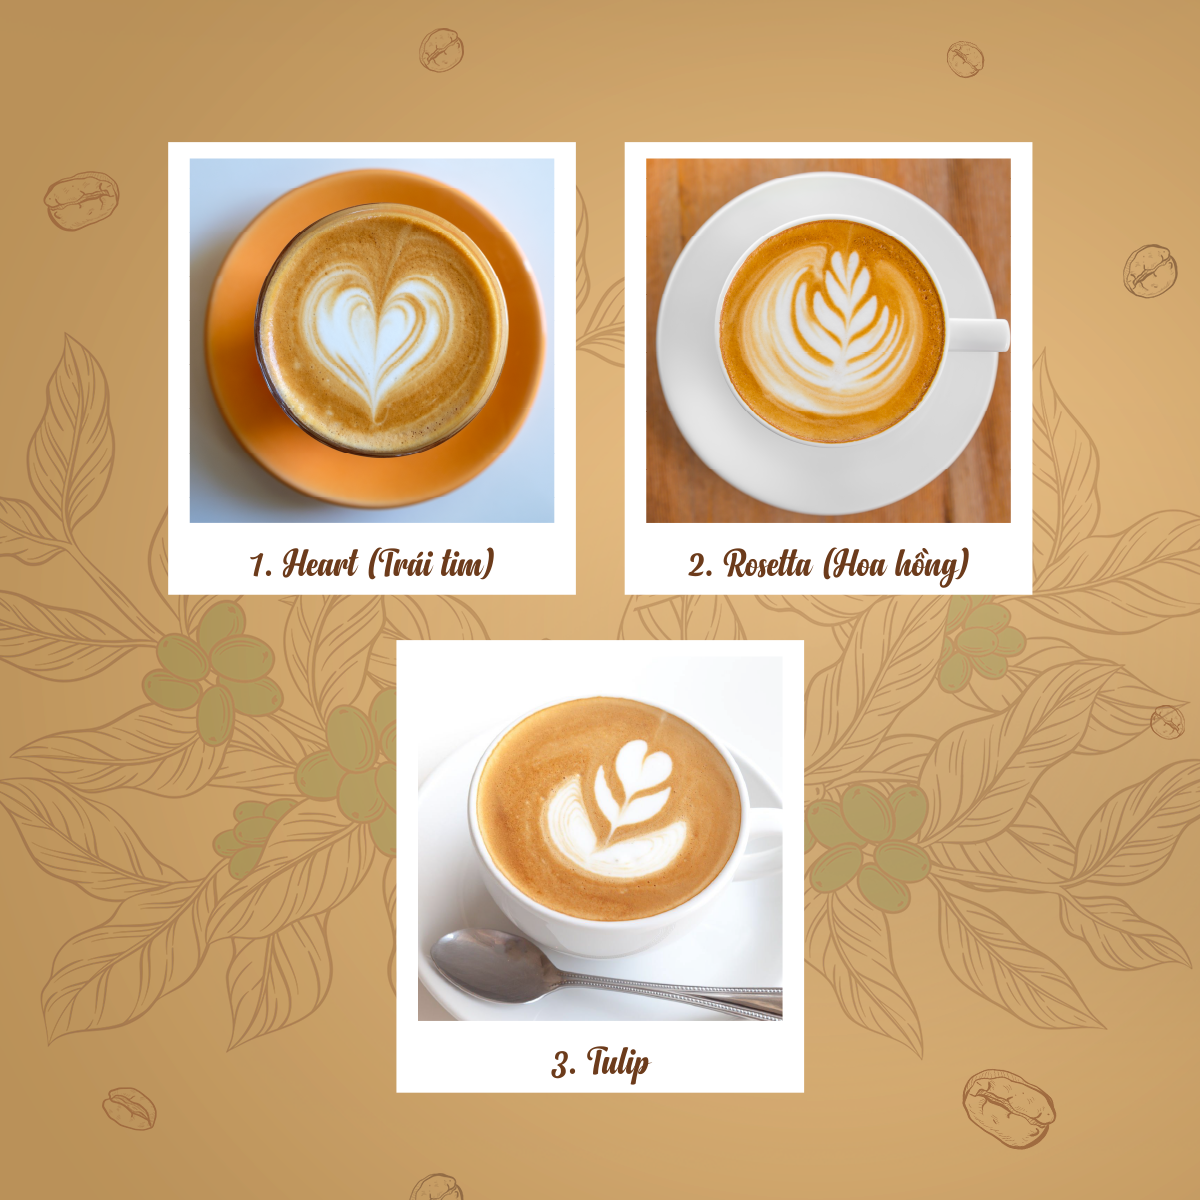 Hình ảnh minh họa cho latte art hình trái tim, hoa hồng và tulip